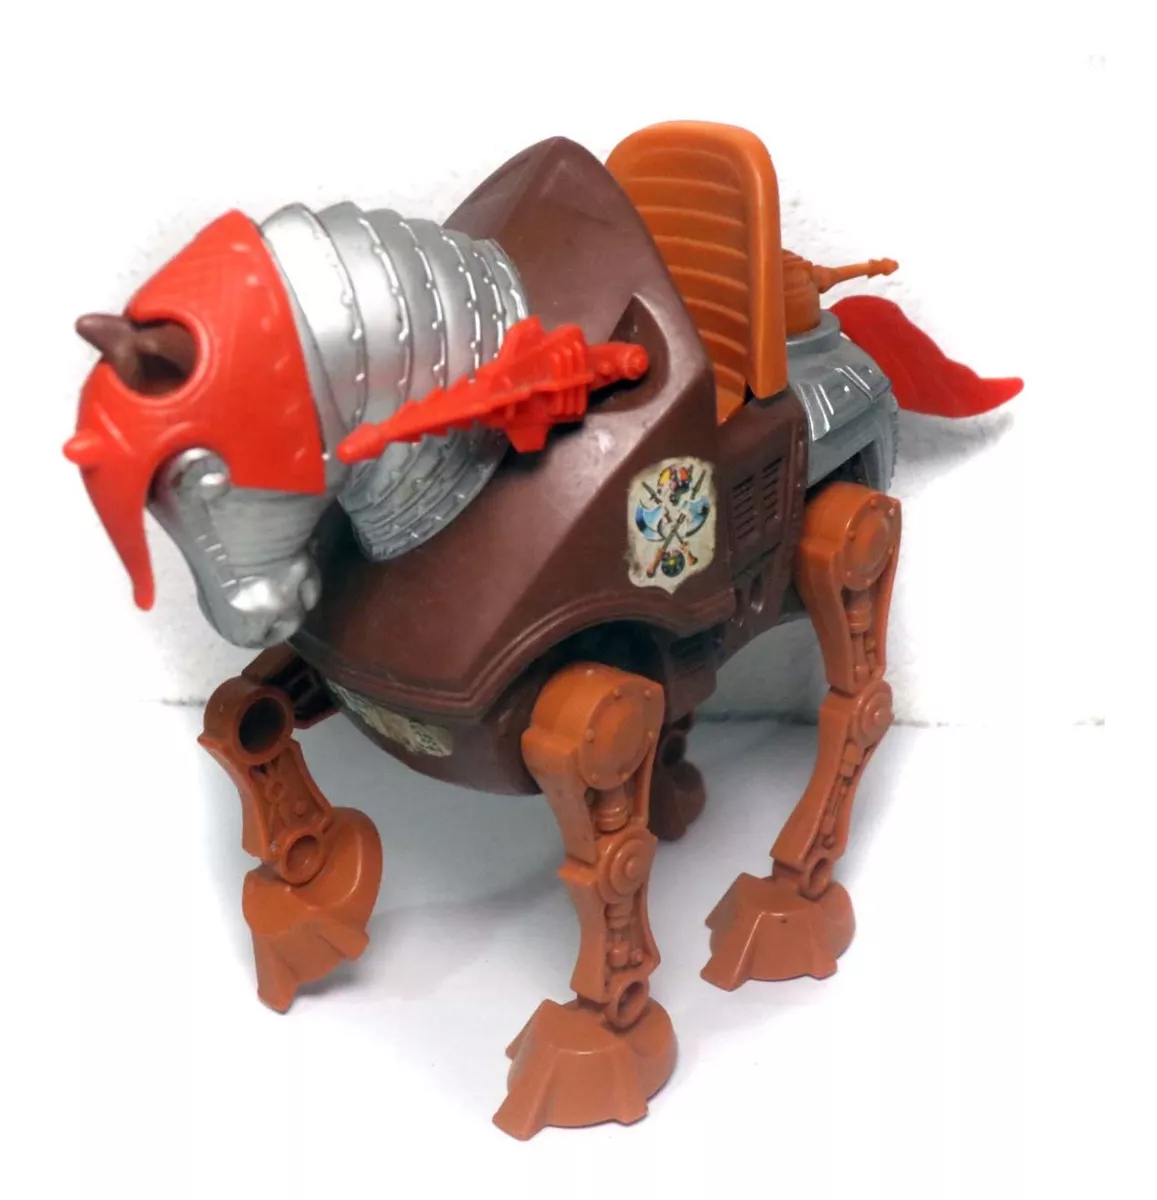 Boneco Cavalo Gladiador Stridor He-man Anos 80 Motu Completo